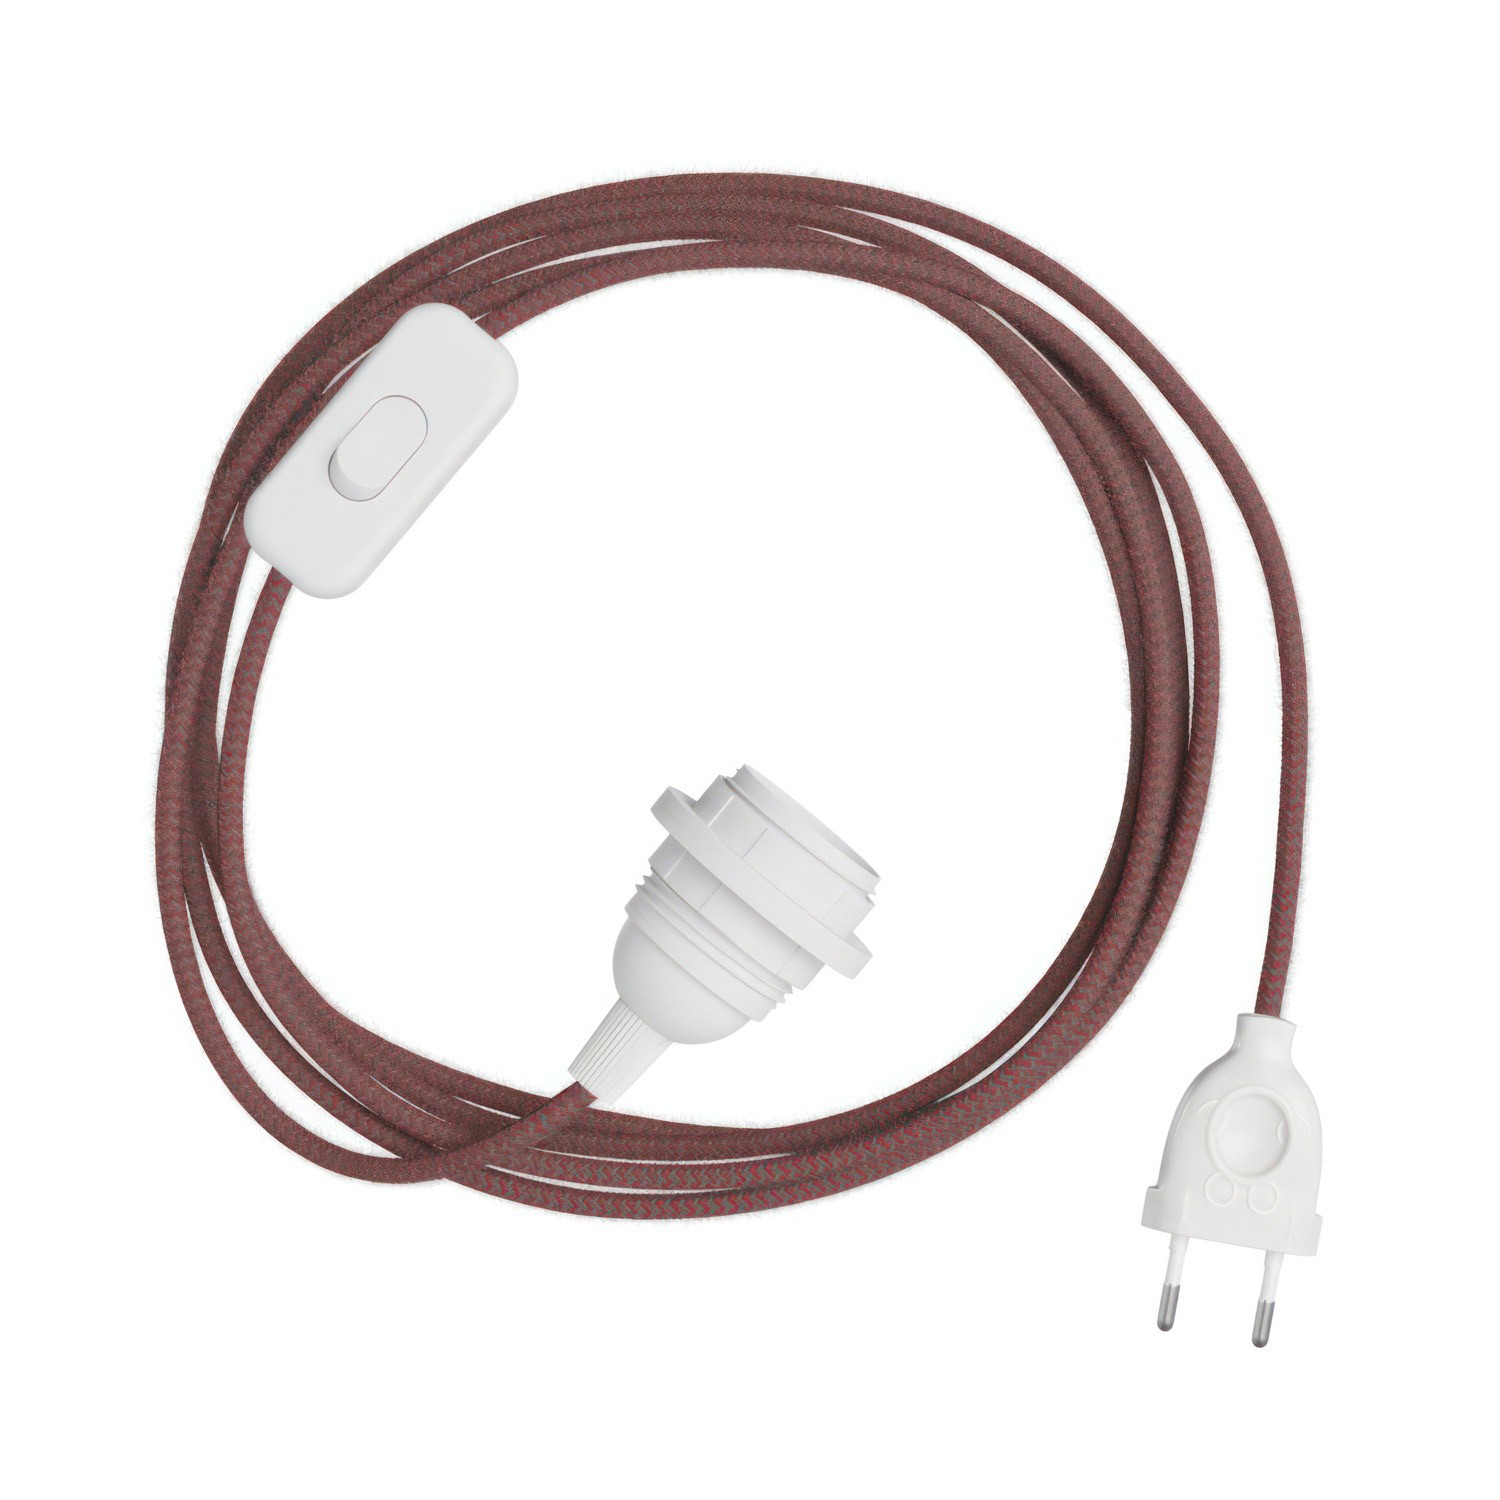 SnakeBis cikk-cakk kábel foglalattal és cikk-cakk hatású textilkábellel lámpabúrához